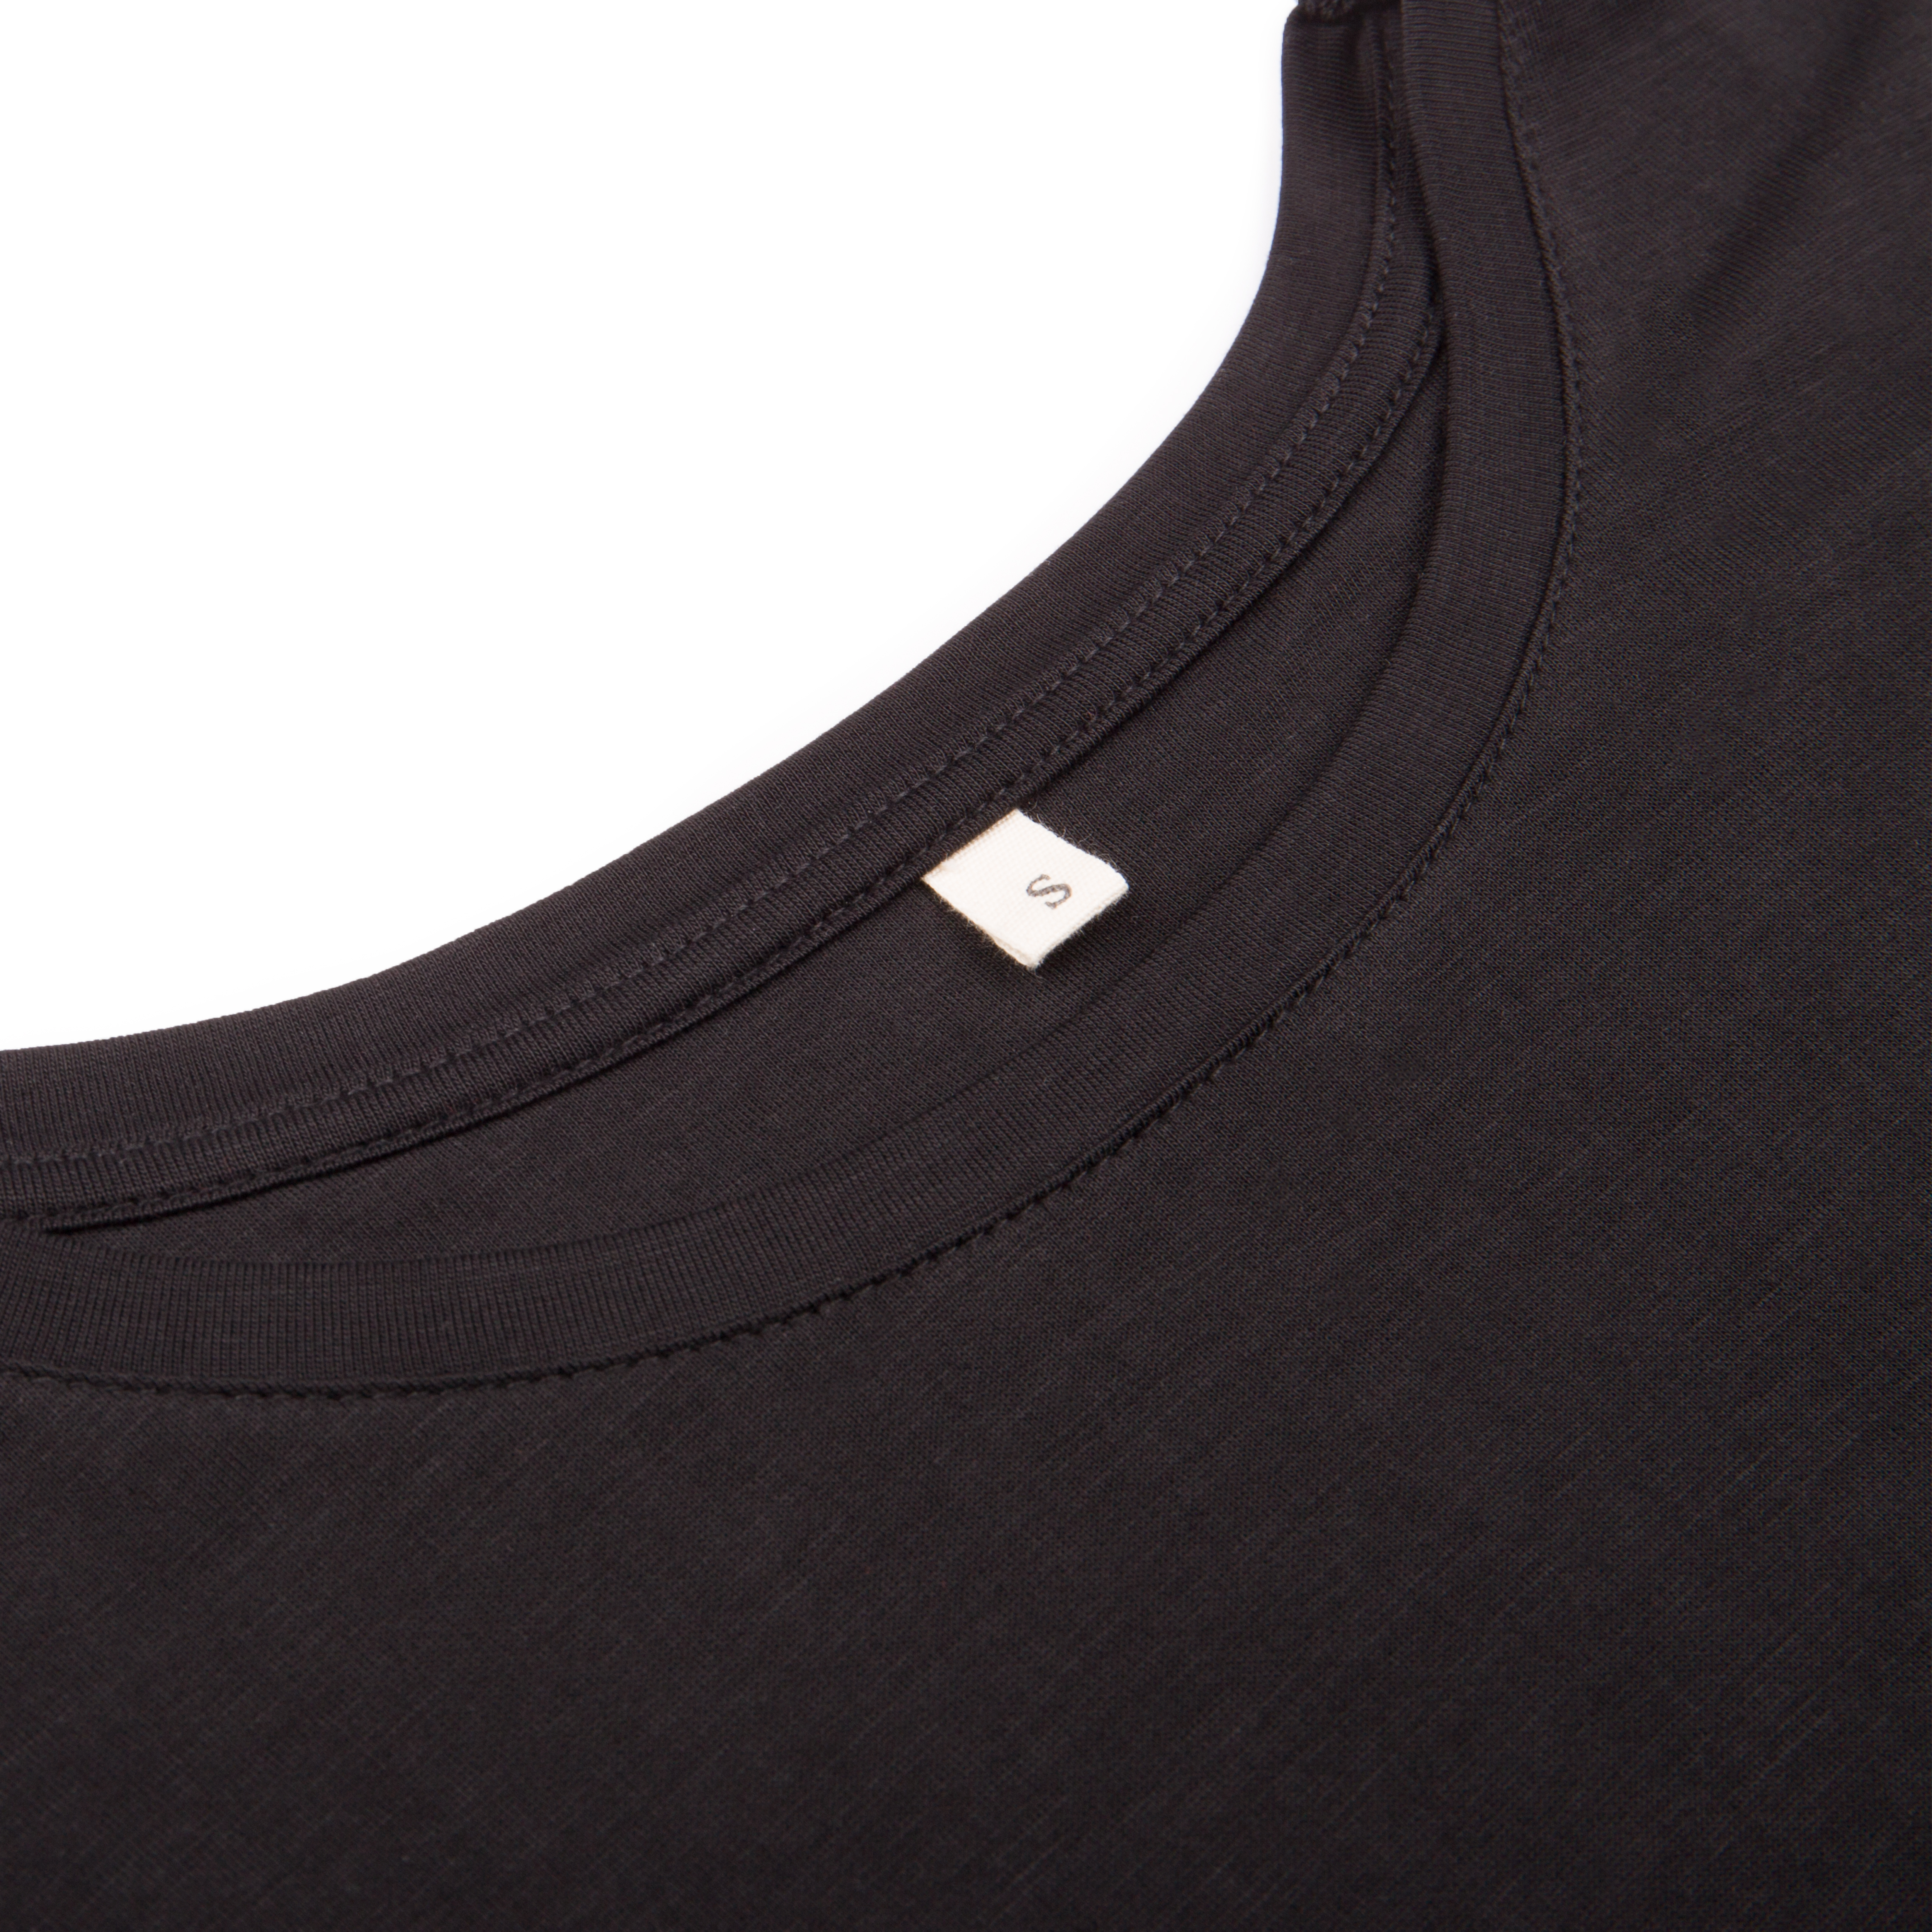 Schwarzes Essential T-Shirt für Damen